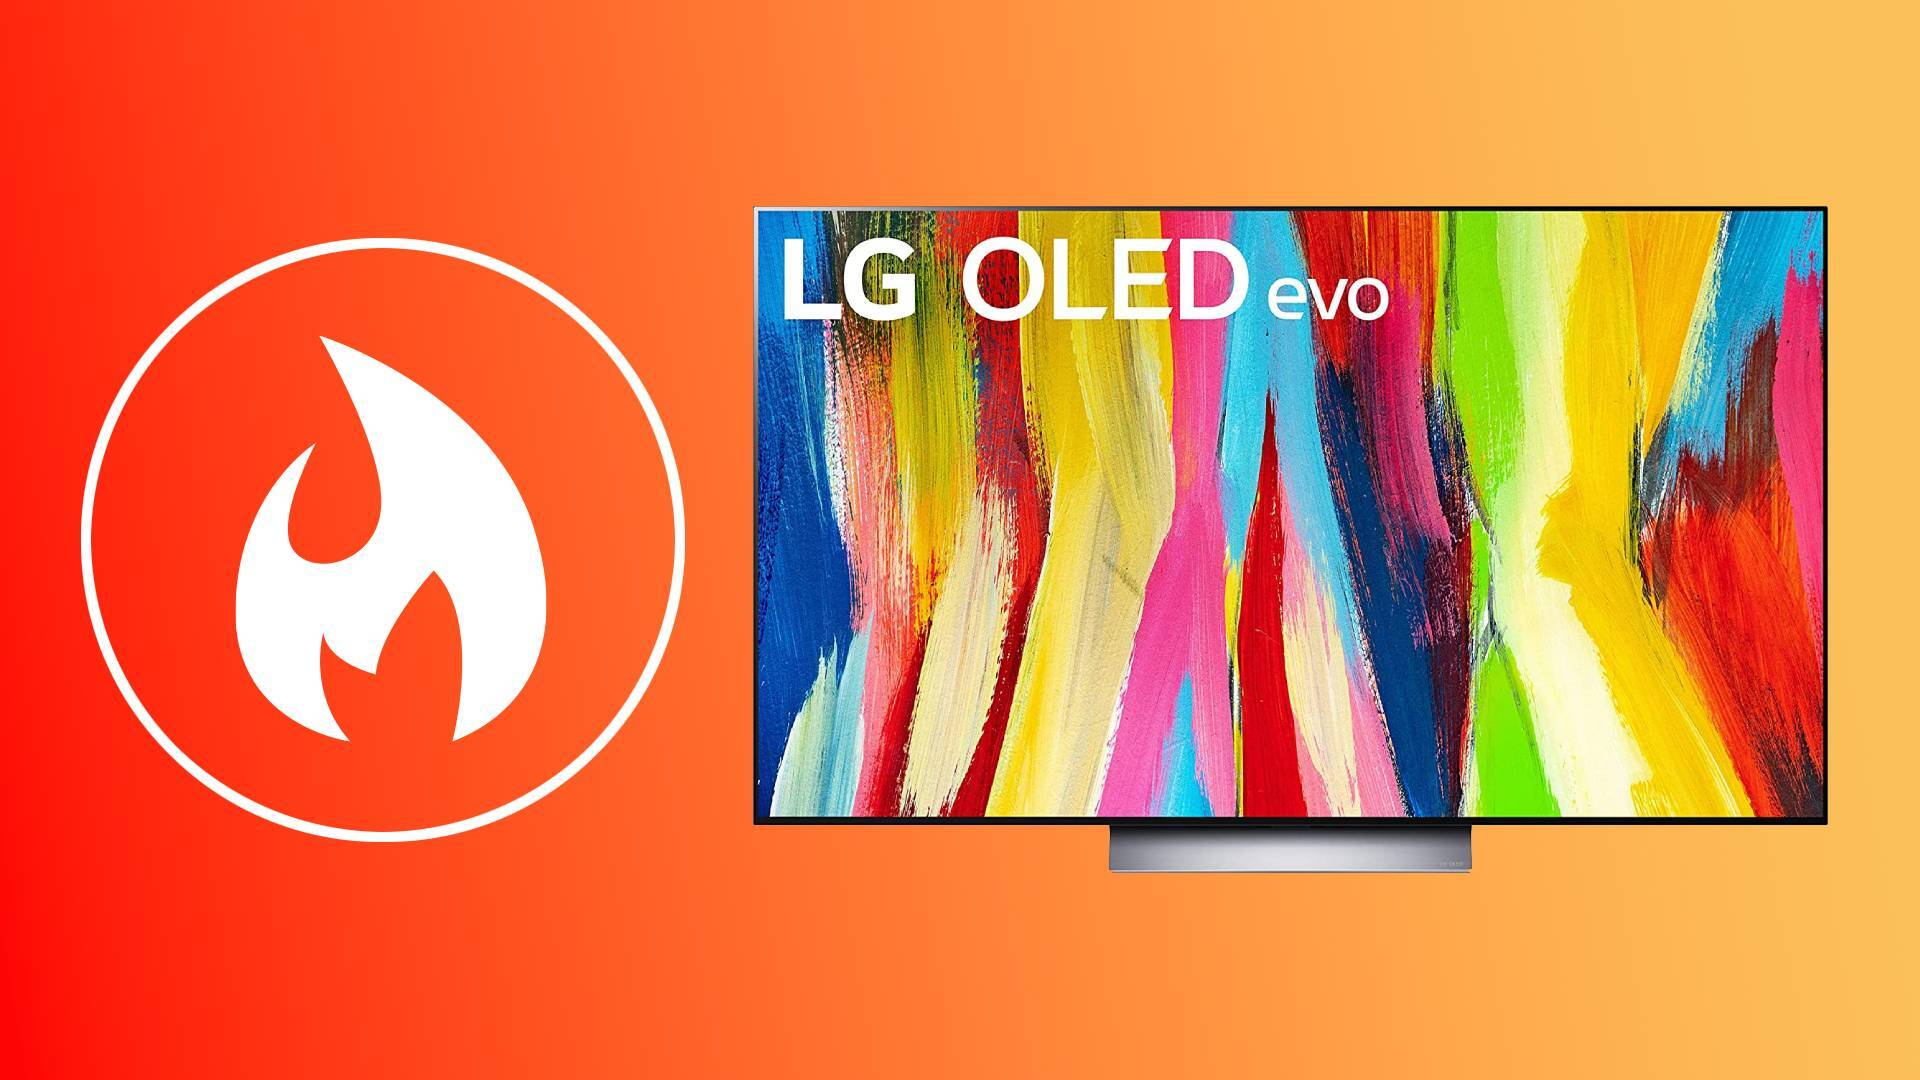 LG C2 OLED on orange background with hot symbol